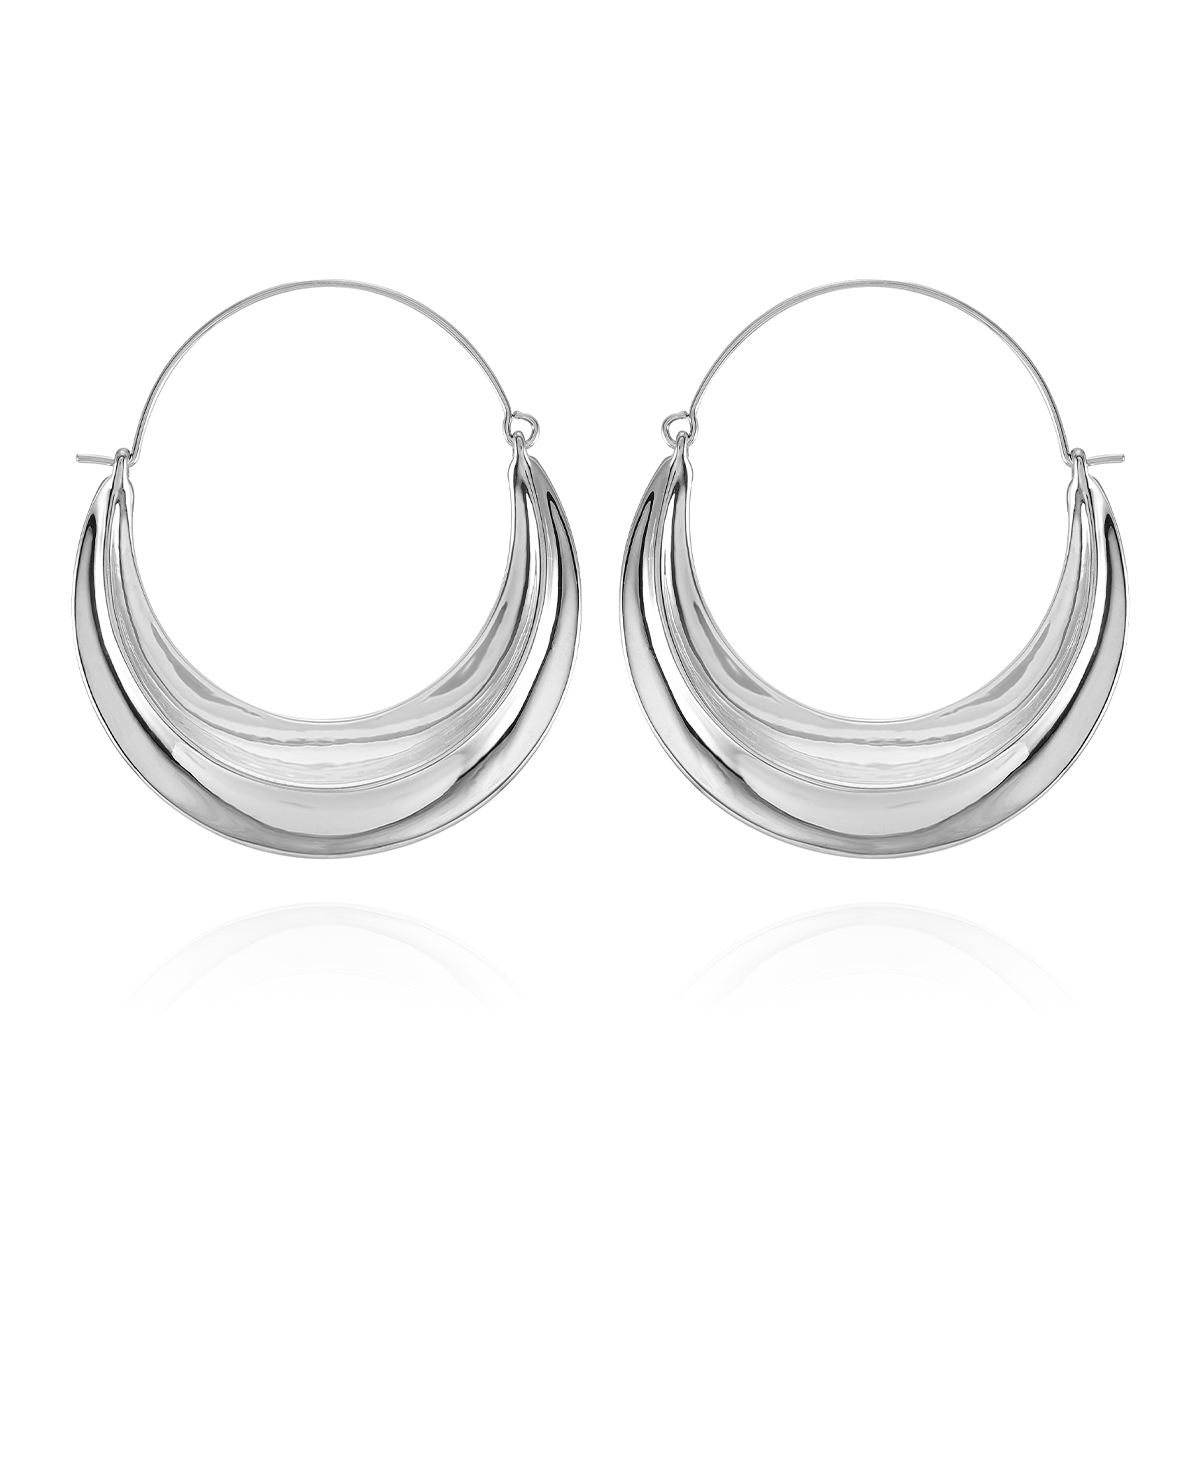 Silver-Tone Statement Hoop Earrings - Silver